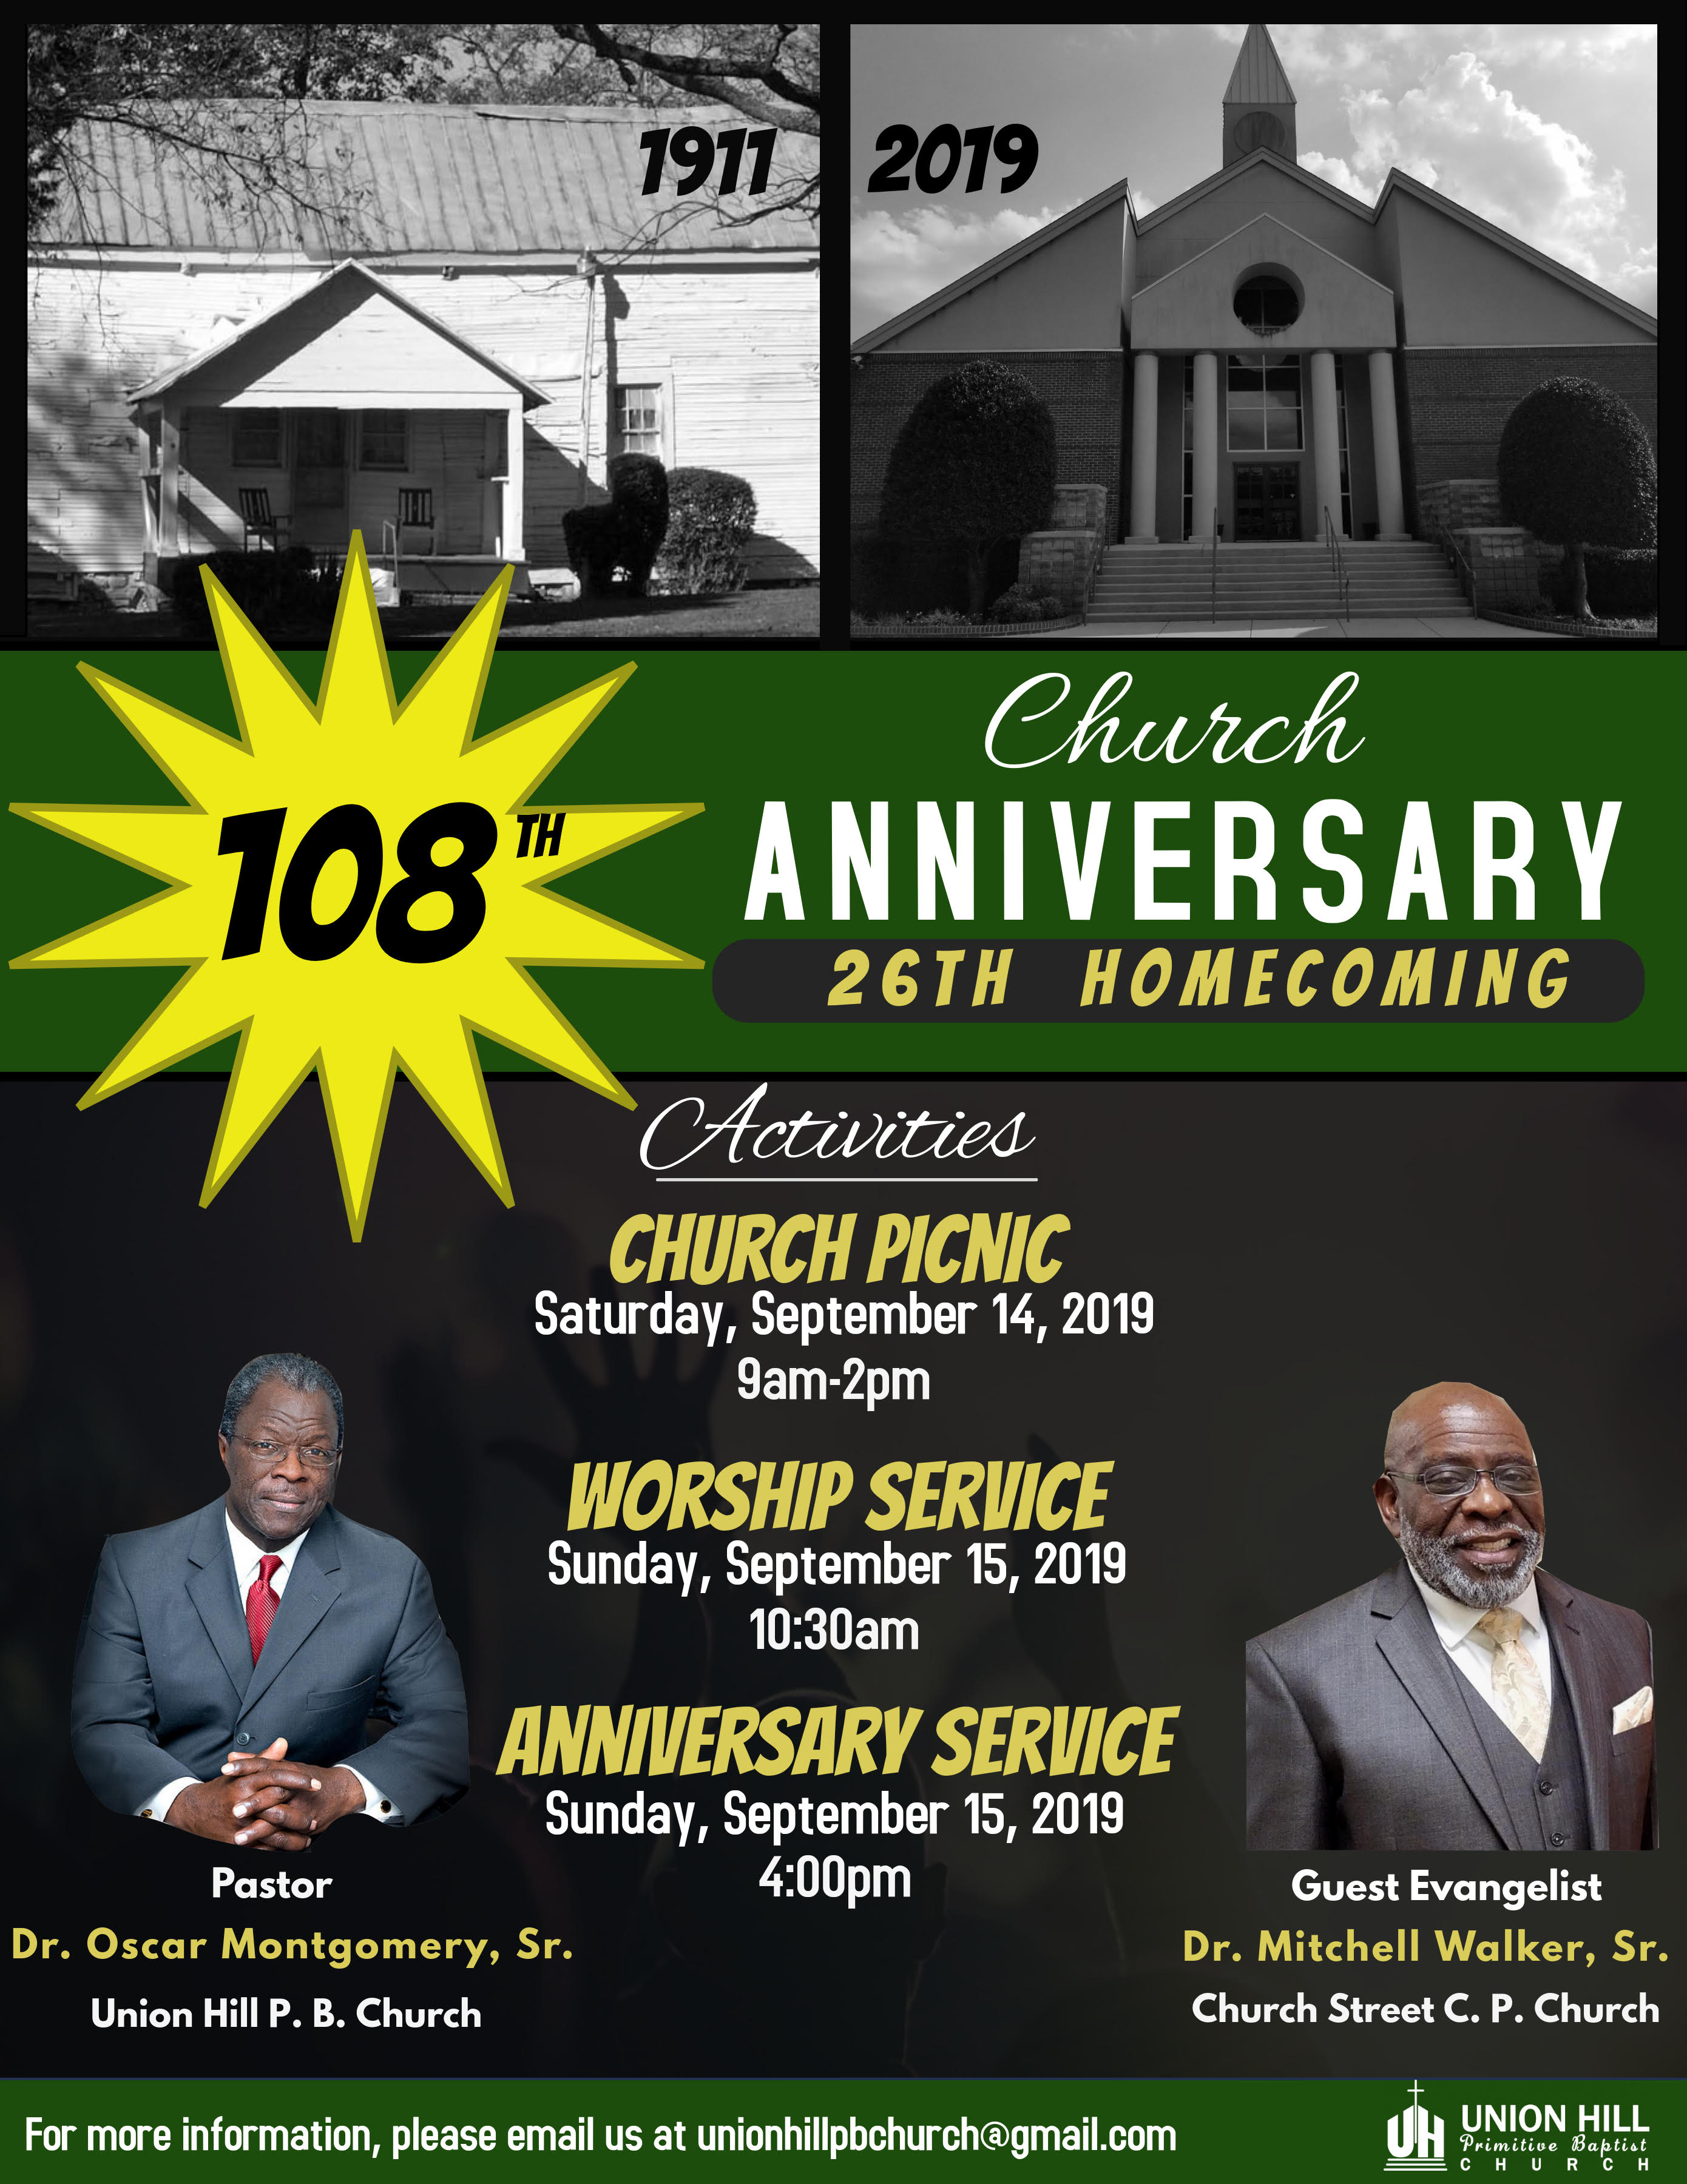 Union Hill P. B. Church 108th Anniversary Announcement